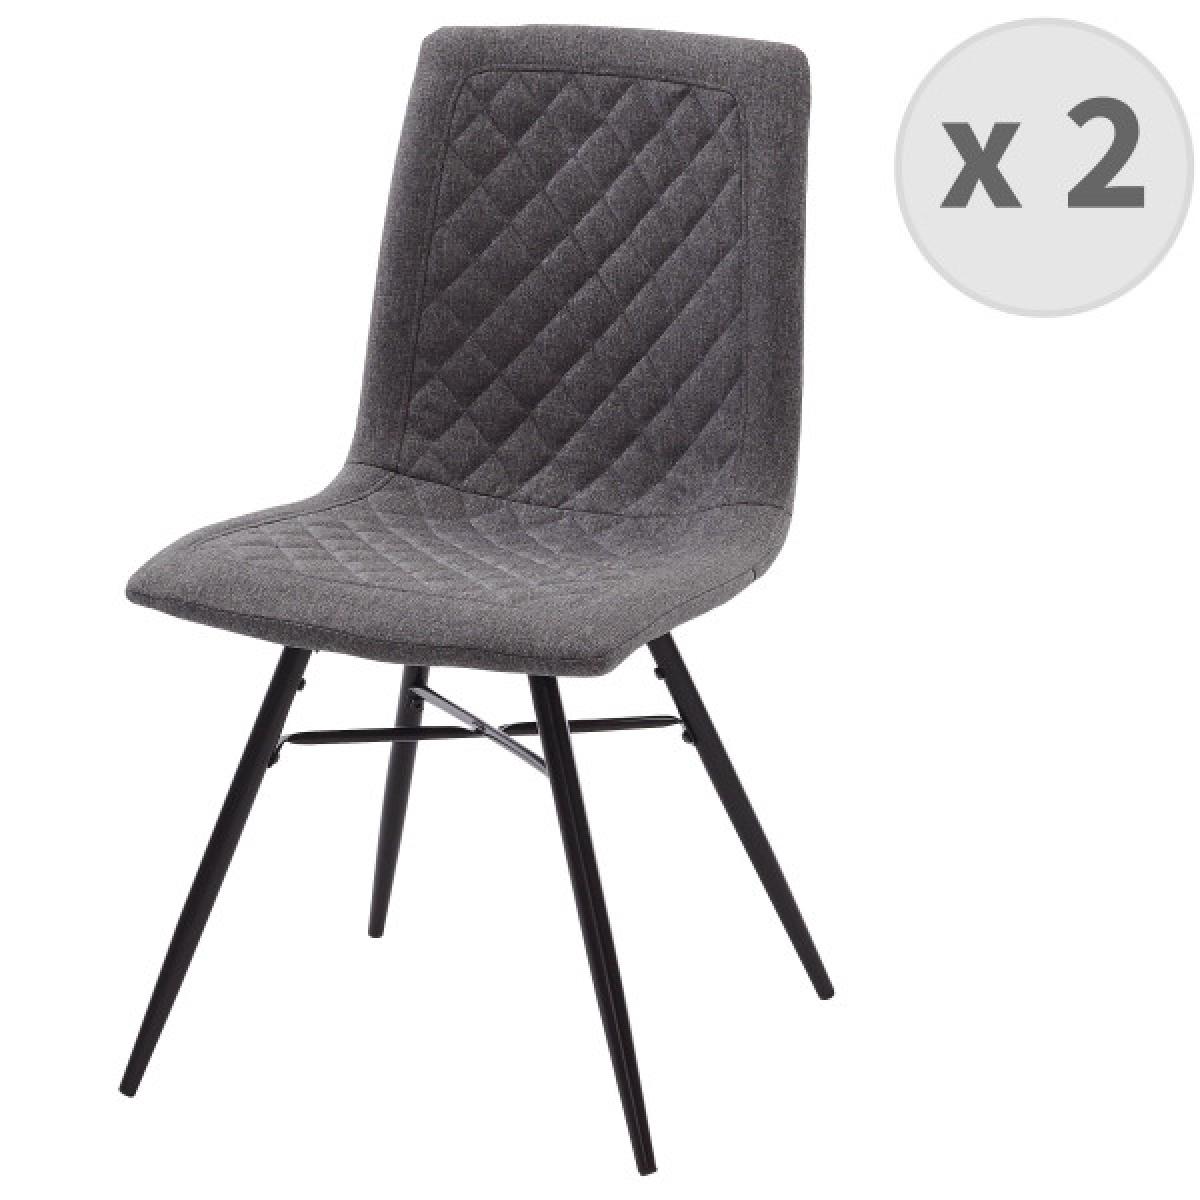 Moloo - OXFORD-Chaise indus tissu gris foncé pieds noir (x2) - Chaises